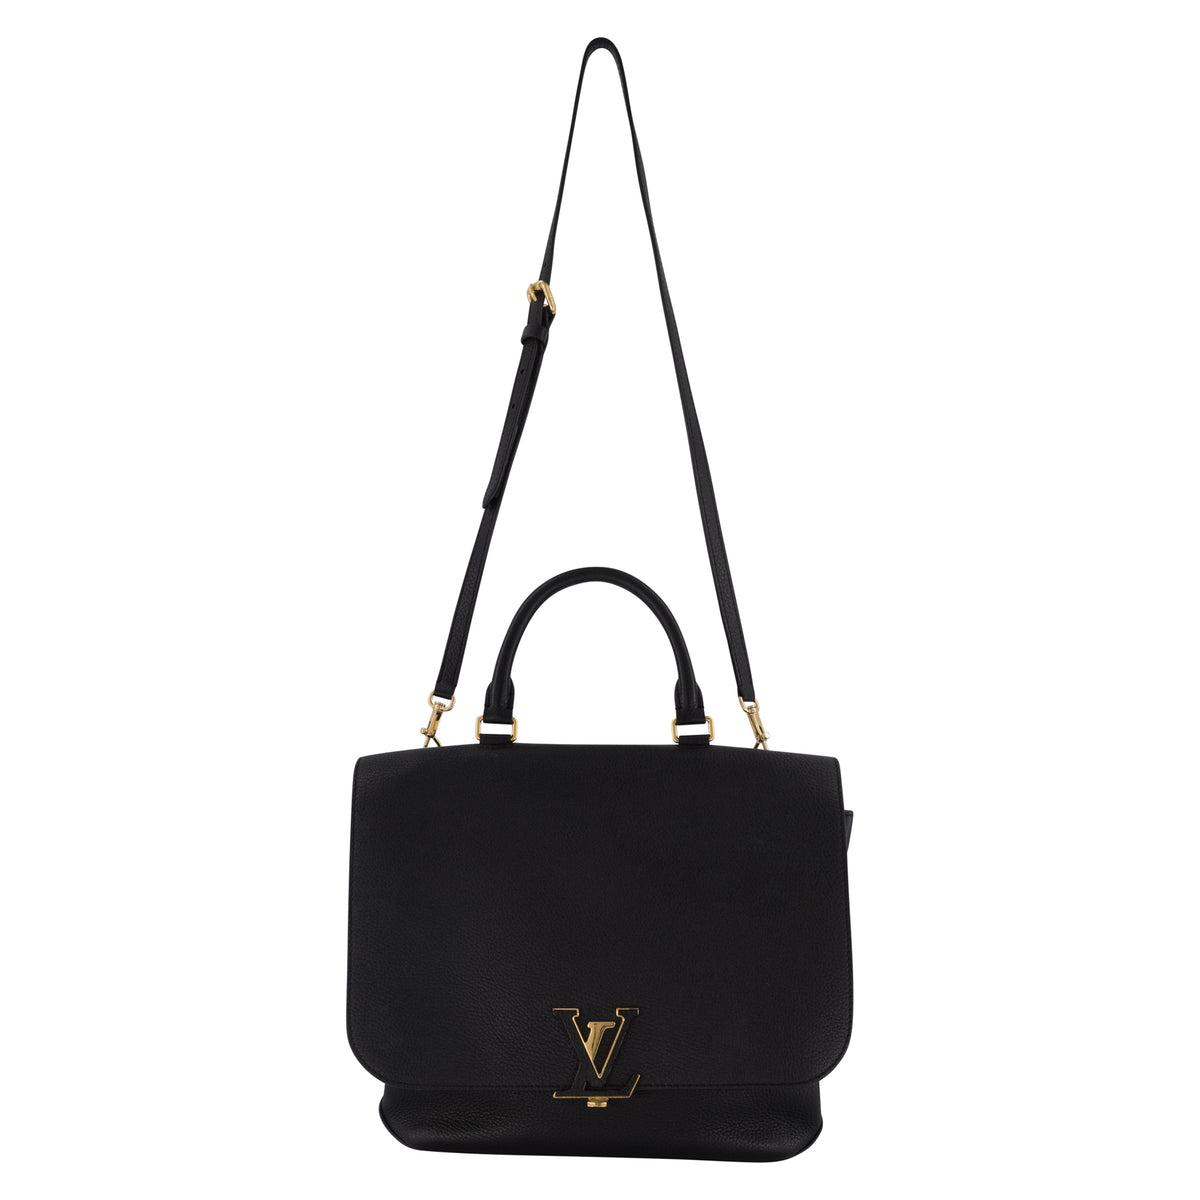 Totes Louis Vuitton Louis Vuitton Volta Top Handle Bag